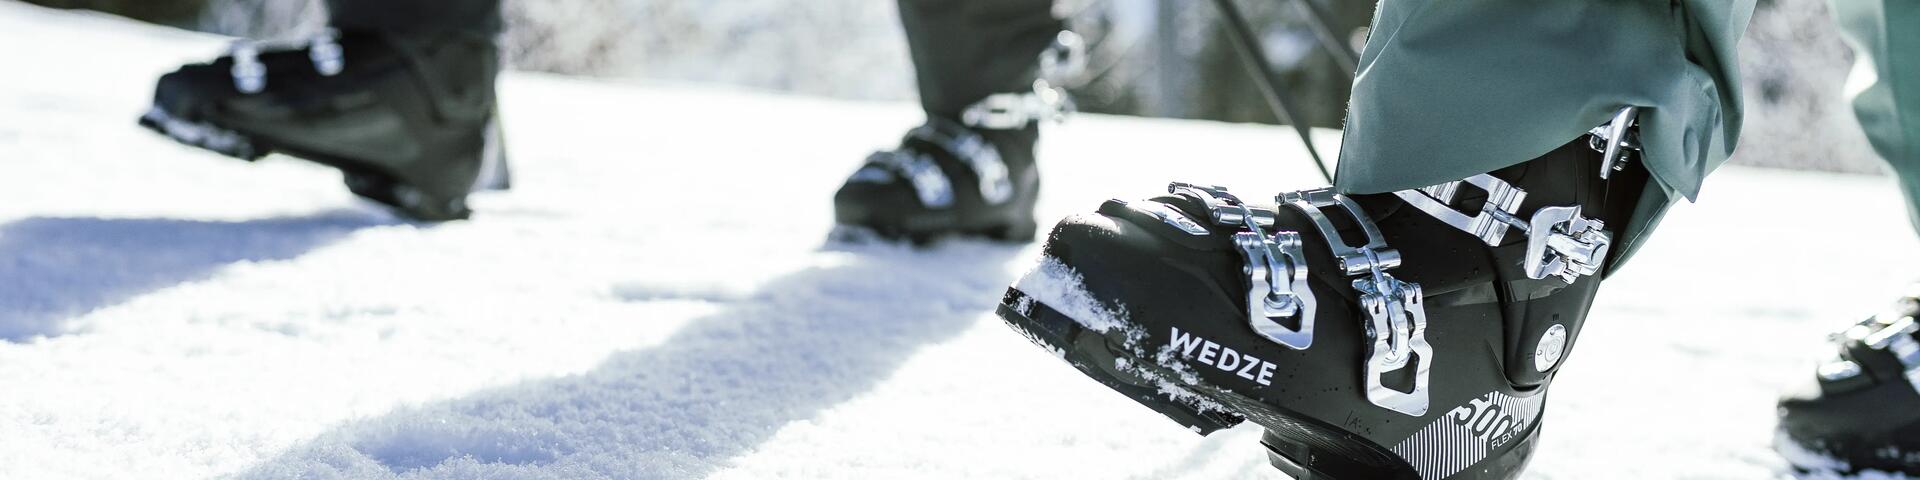 osoby idące w butach narciarskich po śniegu